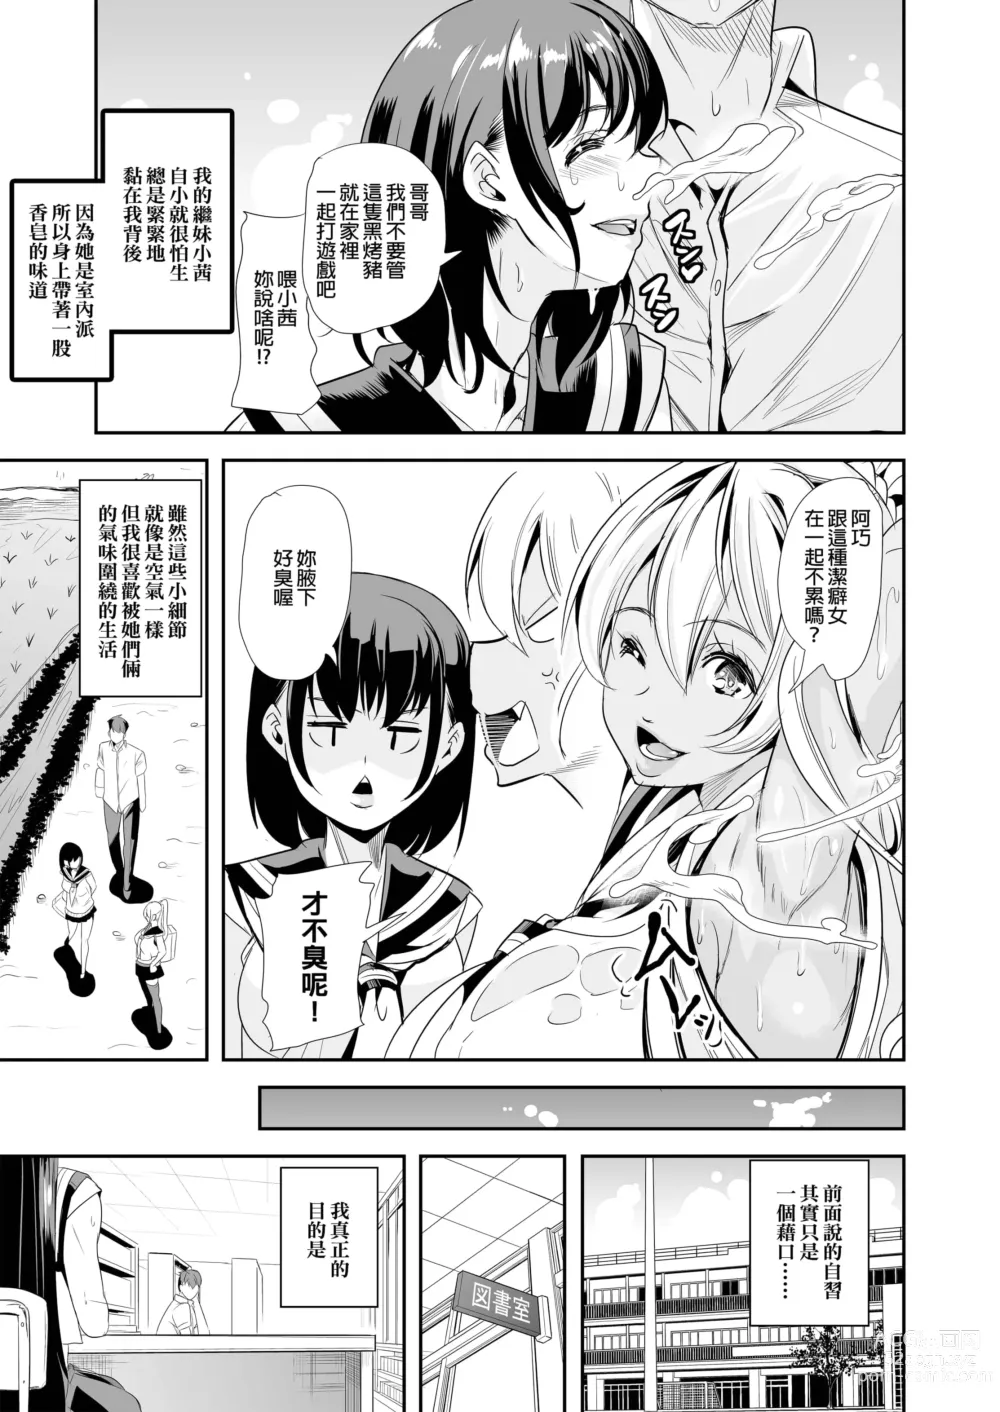 Page 6 of doujinshi ハーレムは彼女の匂い +  妻のNGが無くなっていく整合